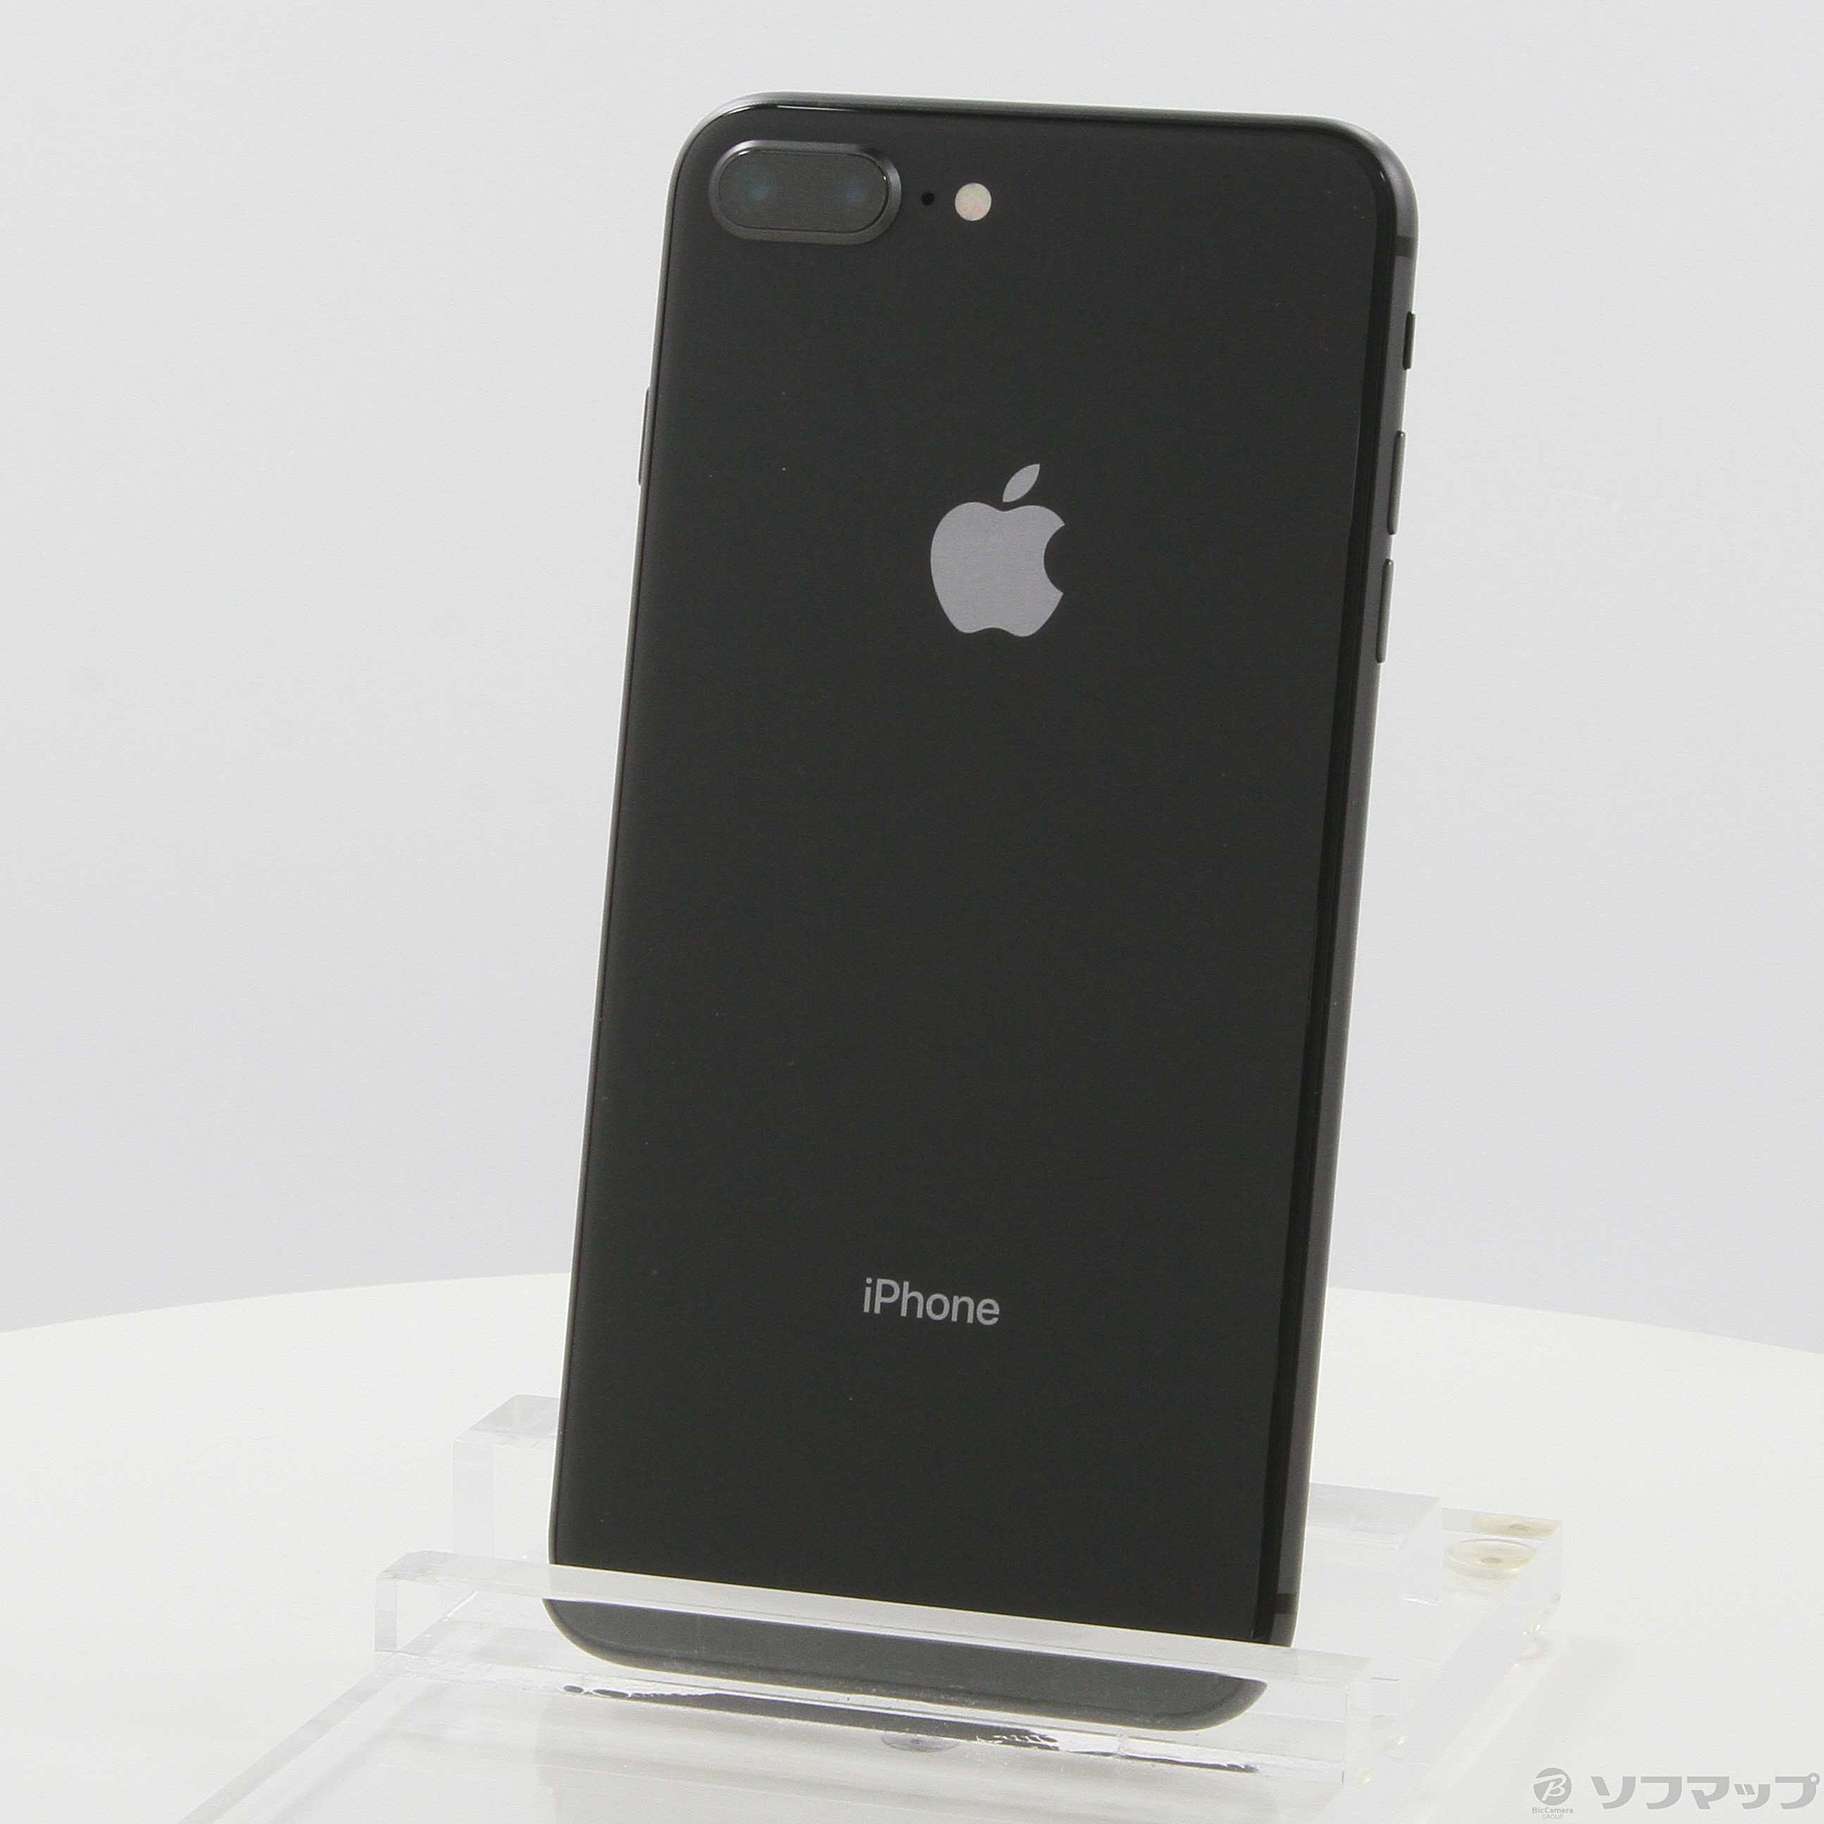 8,560円iPhone 8 Plus 256GB SIMフリー スペースグレー ブラック